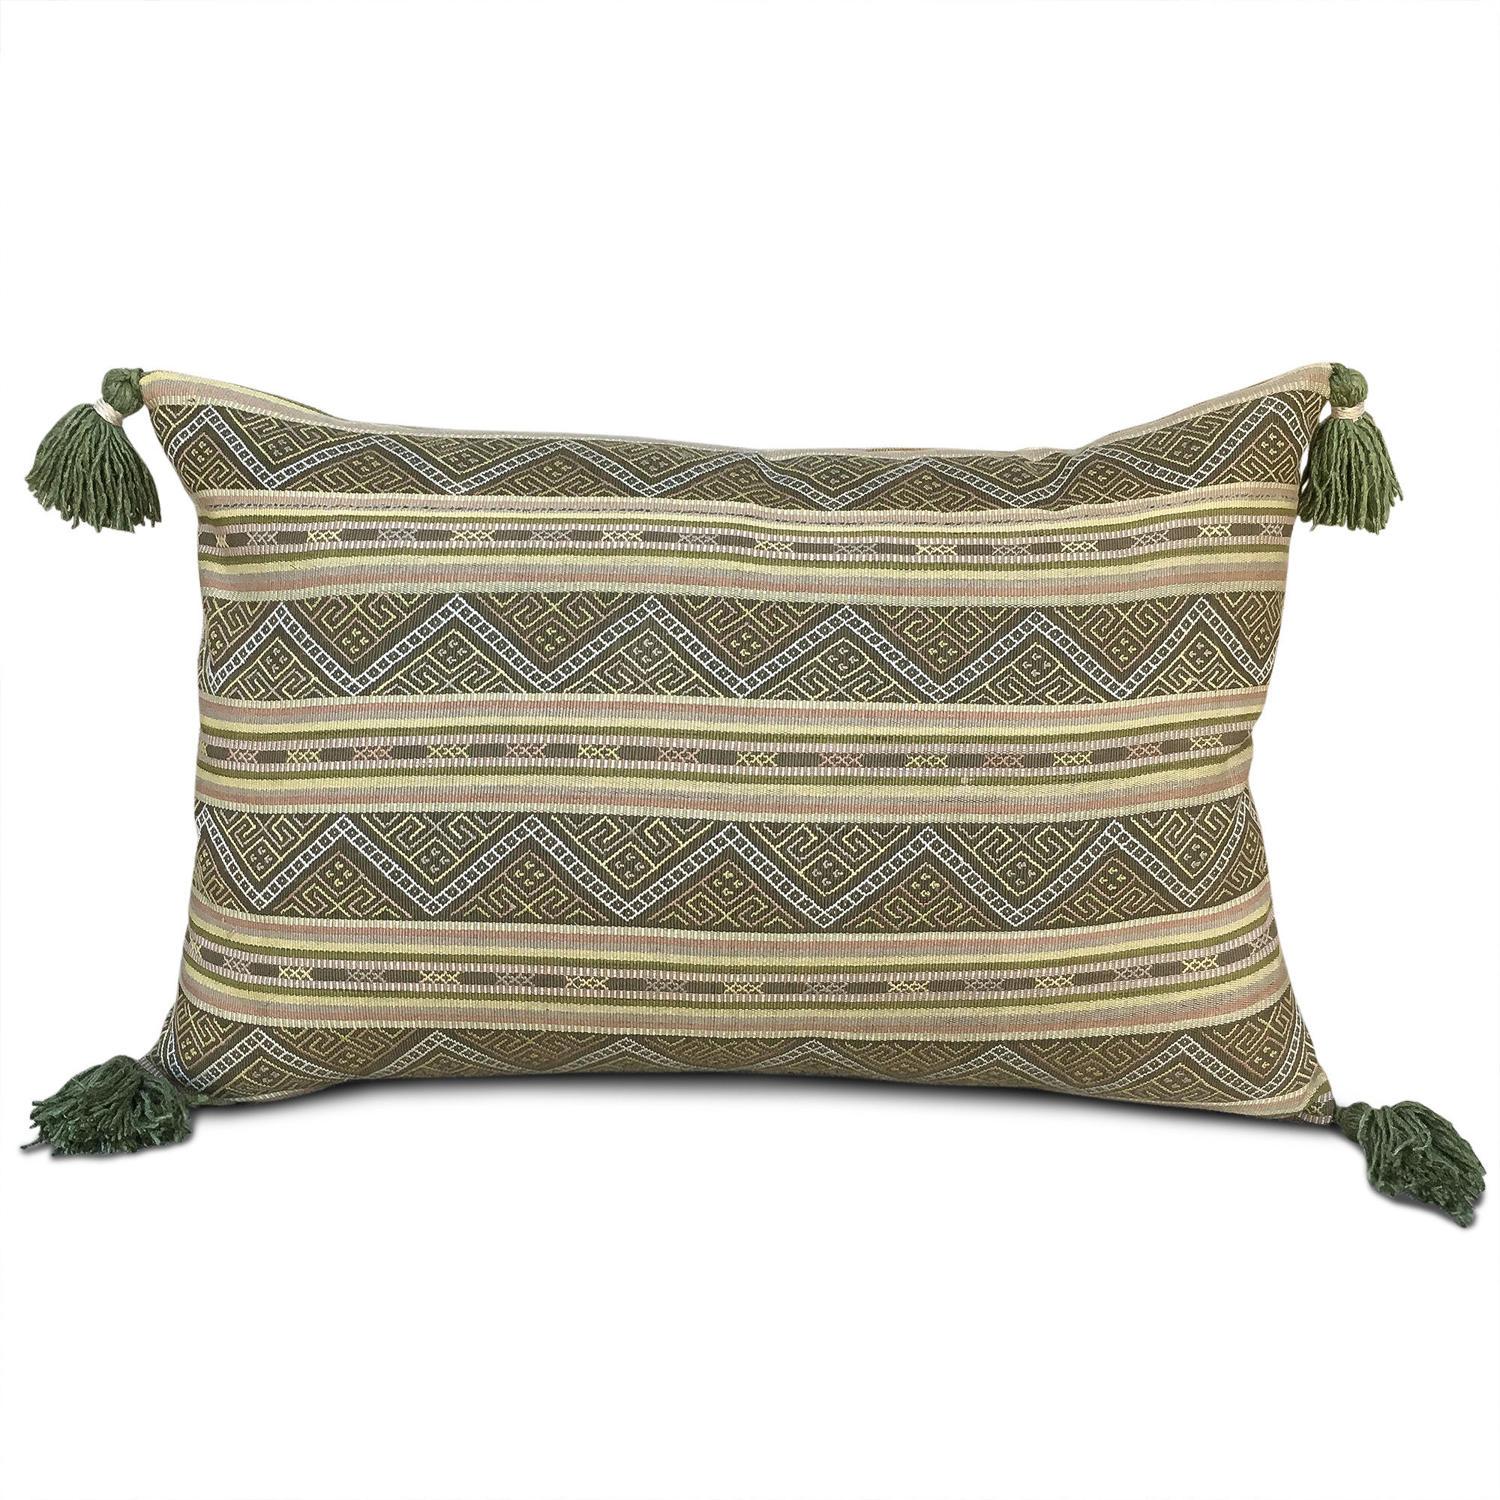 Ikat Cushions with Tassels